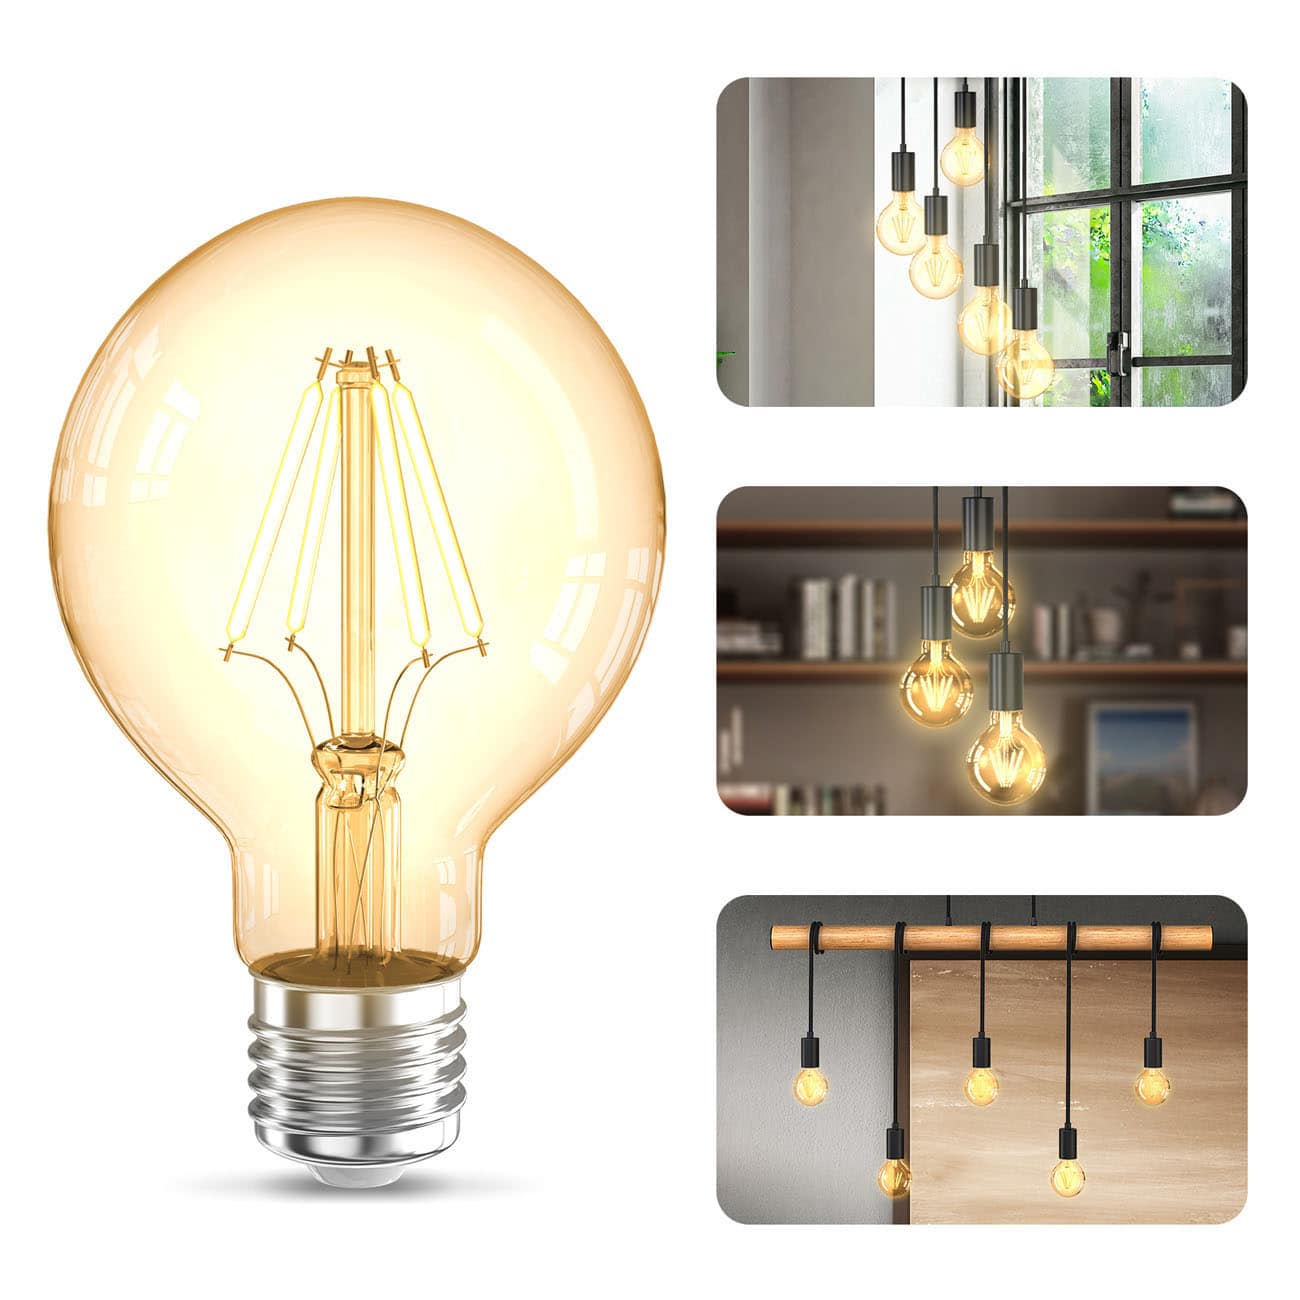 LED Glühbirne G80 E27 Vintage Lampe Edison - 2er Set - Retro-Glühlampe 126x80mm Tropfenform Energiesparlampe 4W 320lm 2.200K ultra-warmweißes Licht | bernstein - 2